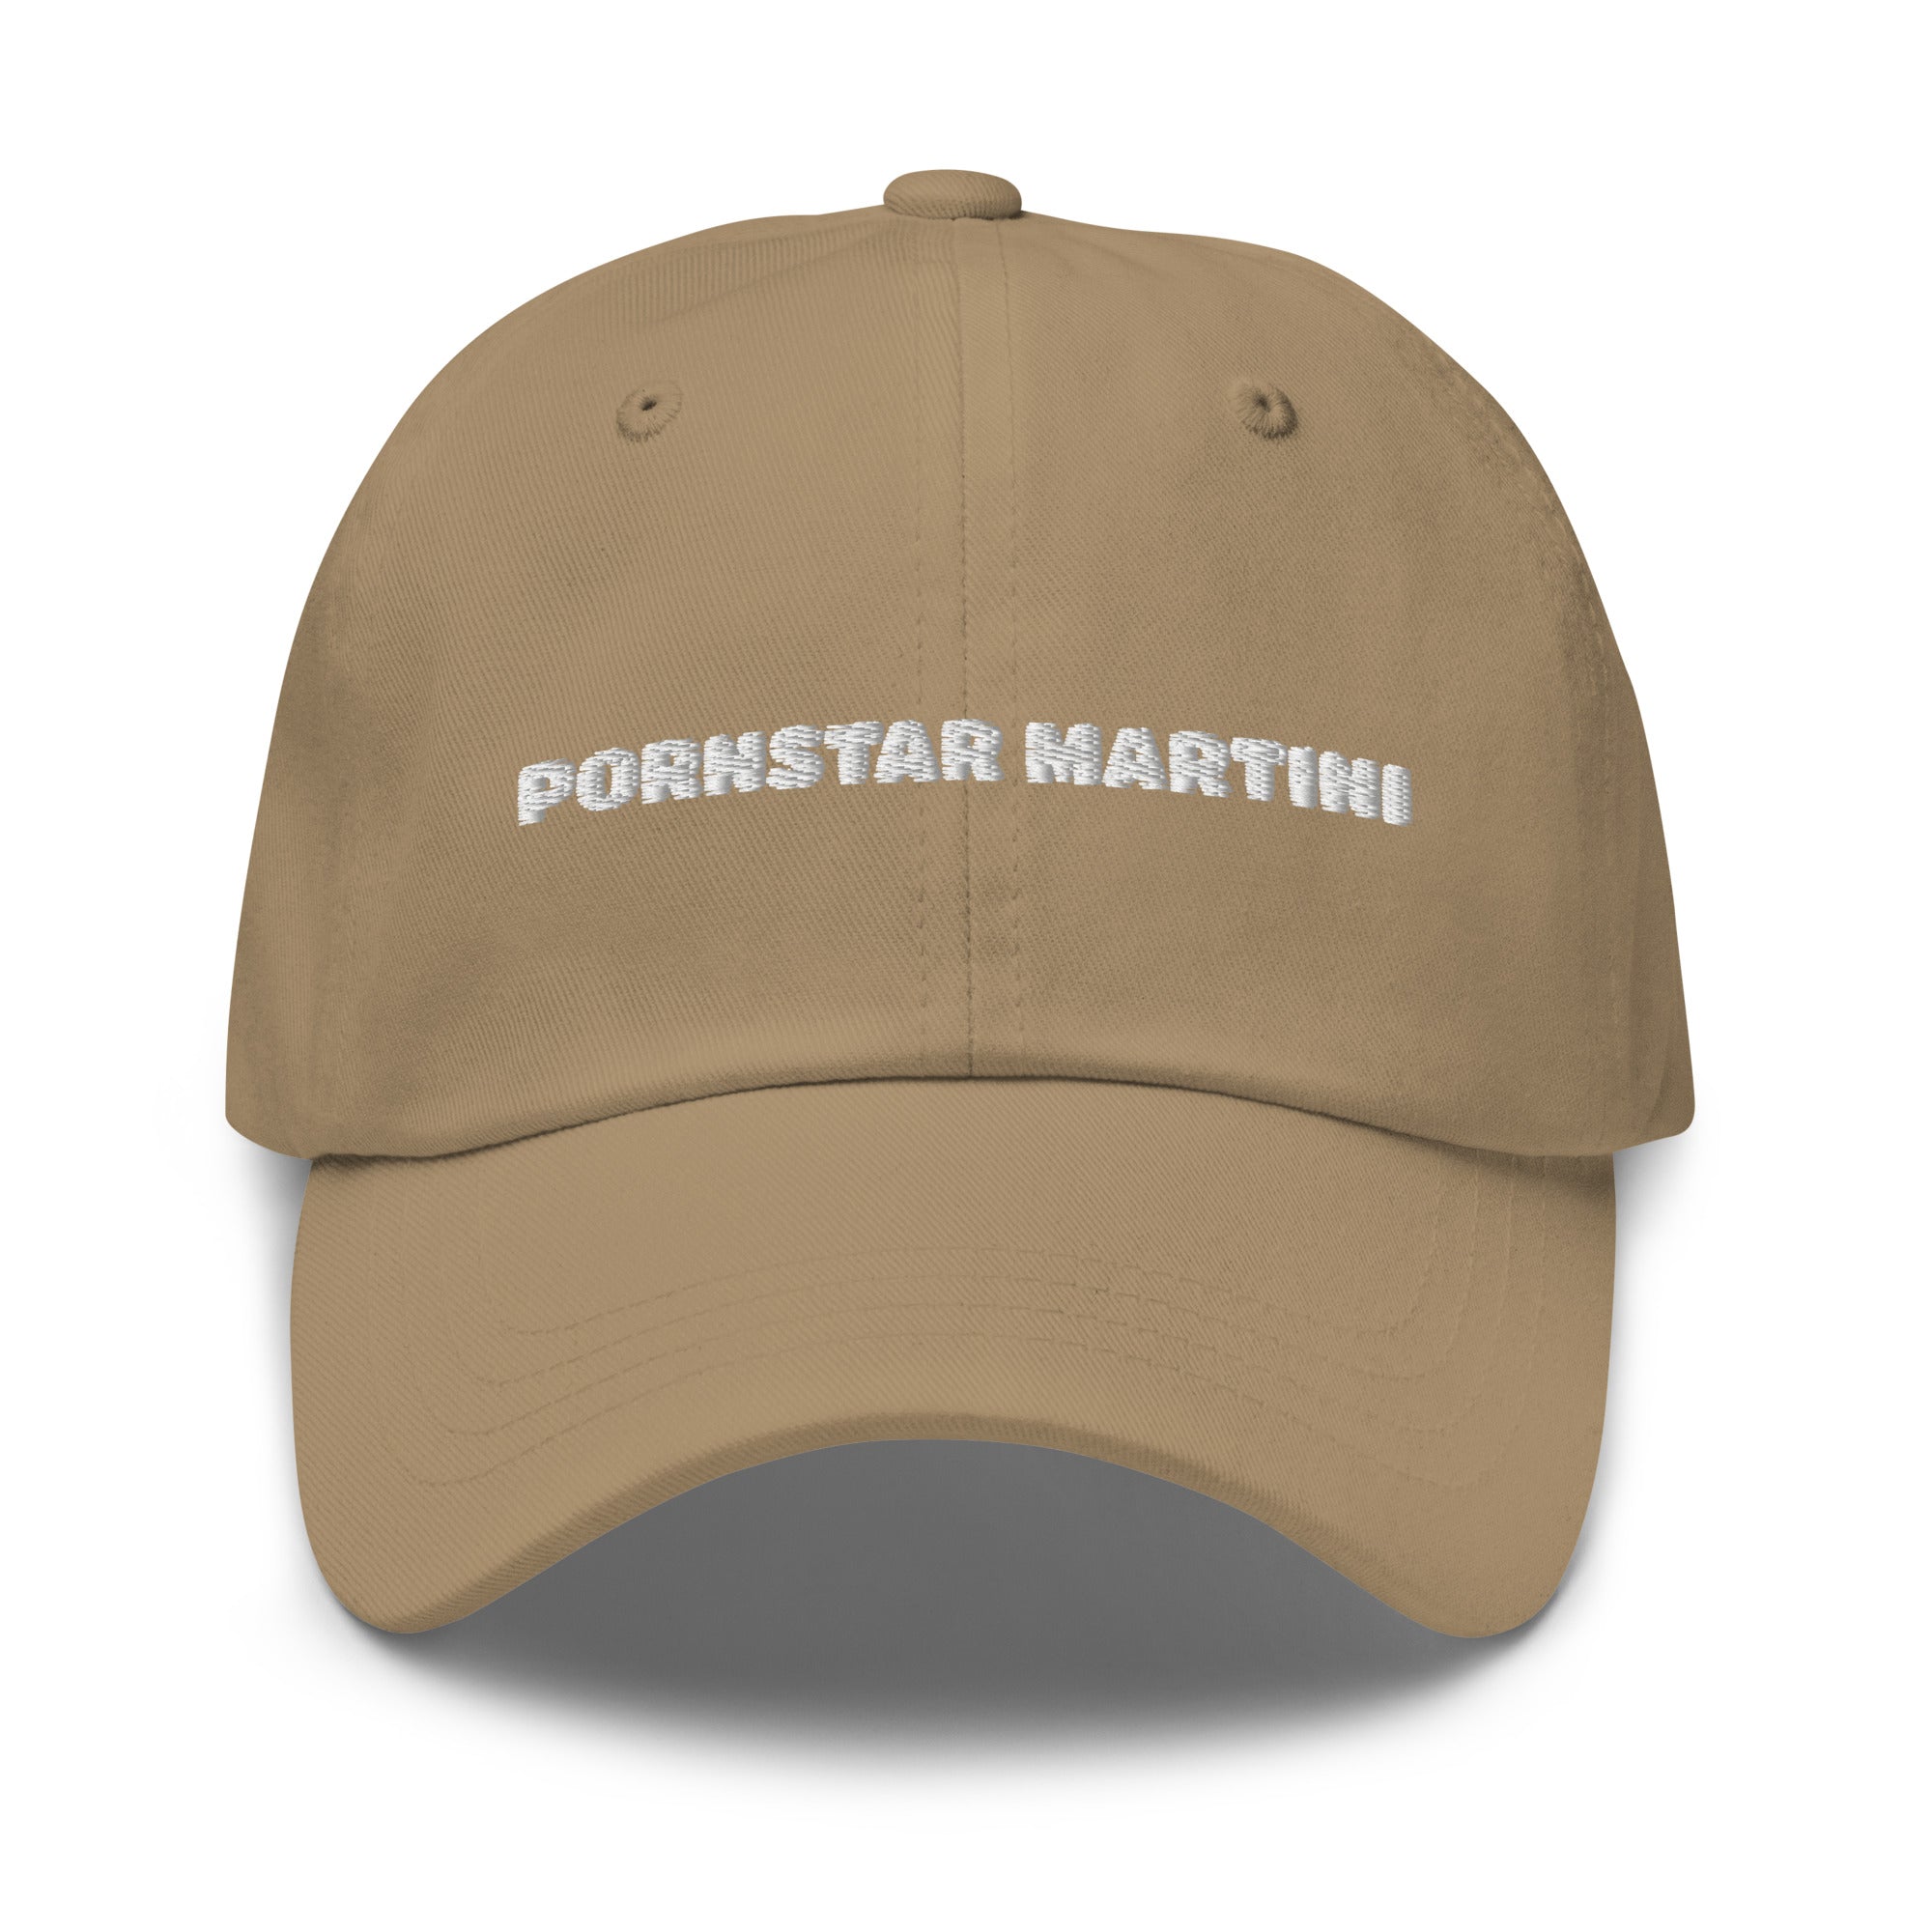 pornstar martini - Dad hat